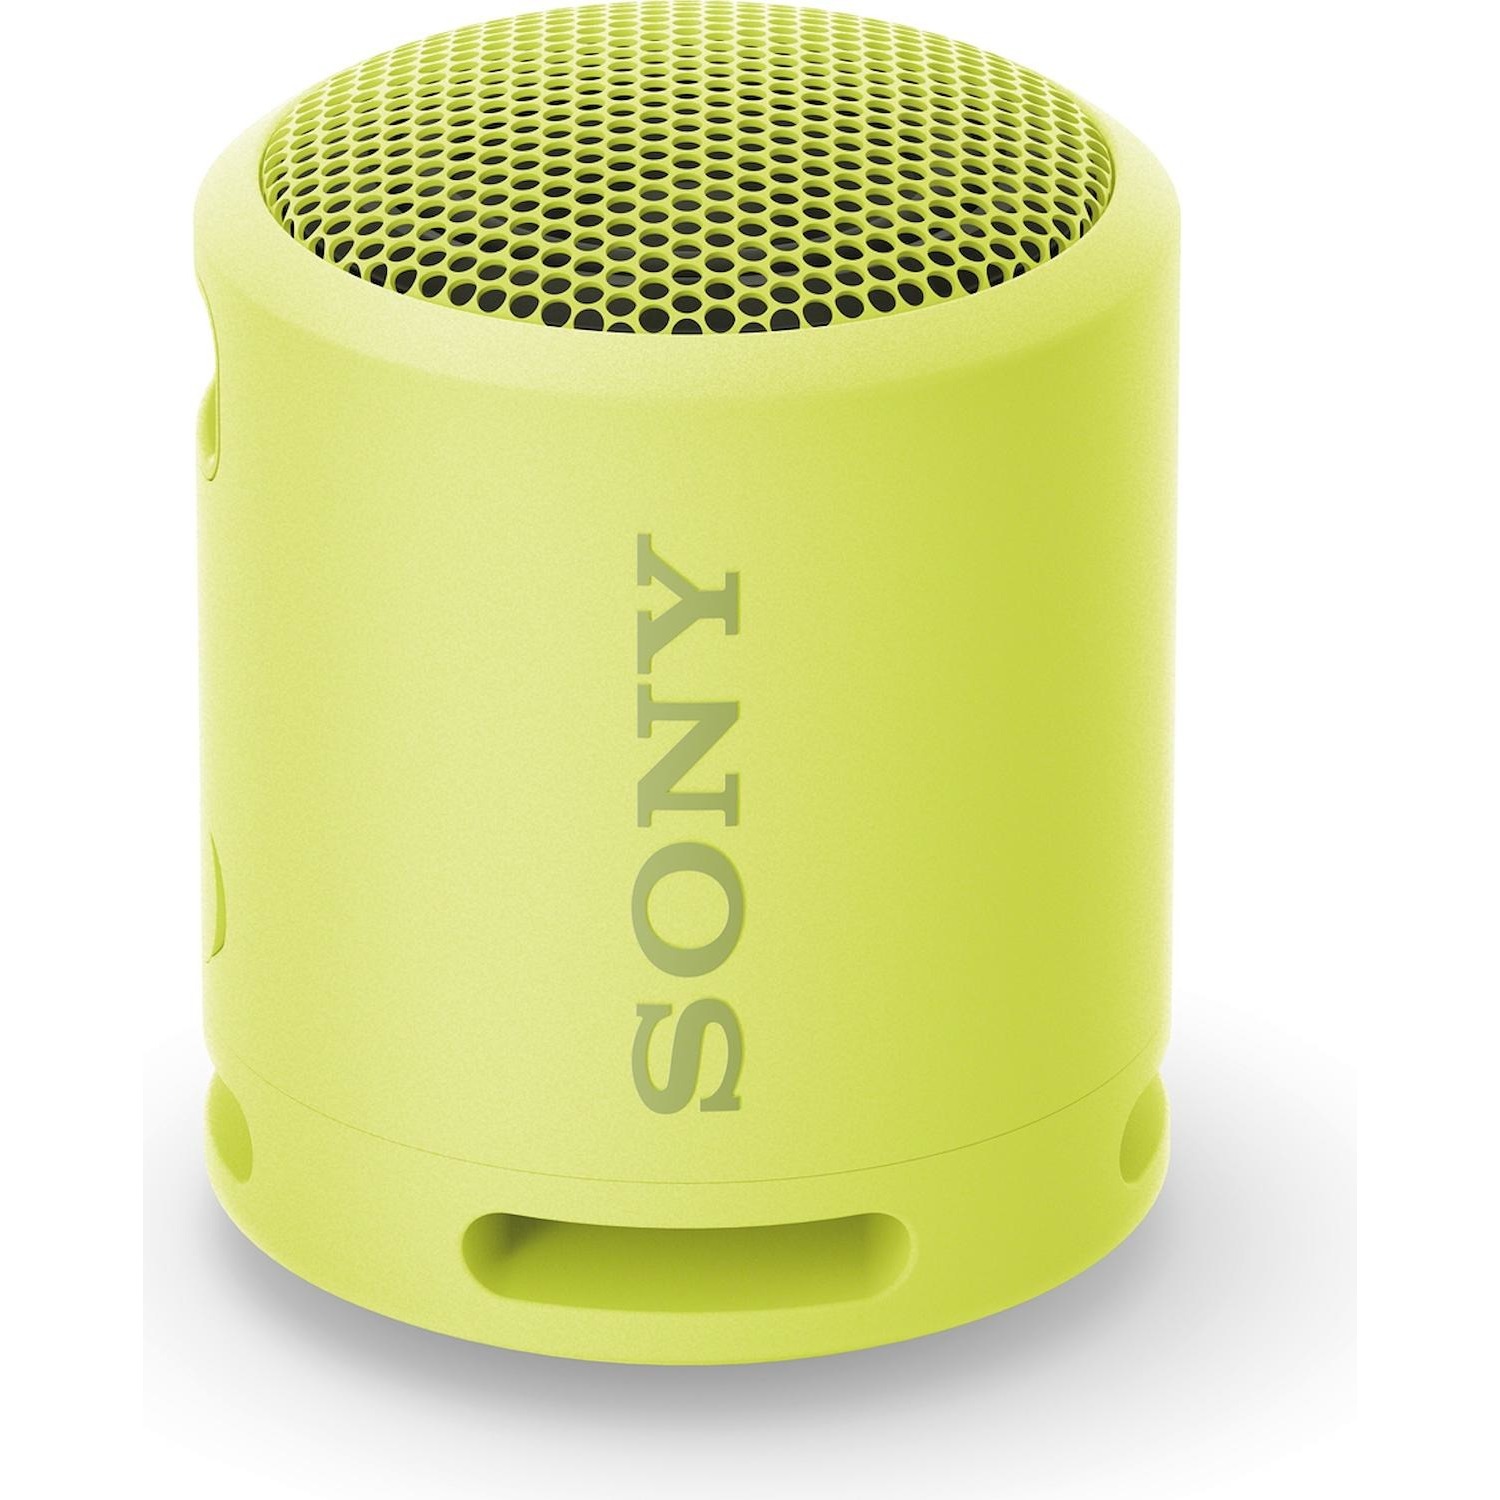 Immagine per Diffusore Bluetooth Sony SRSXB13Y colore giallo da DIMOStore